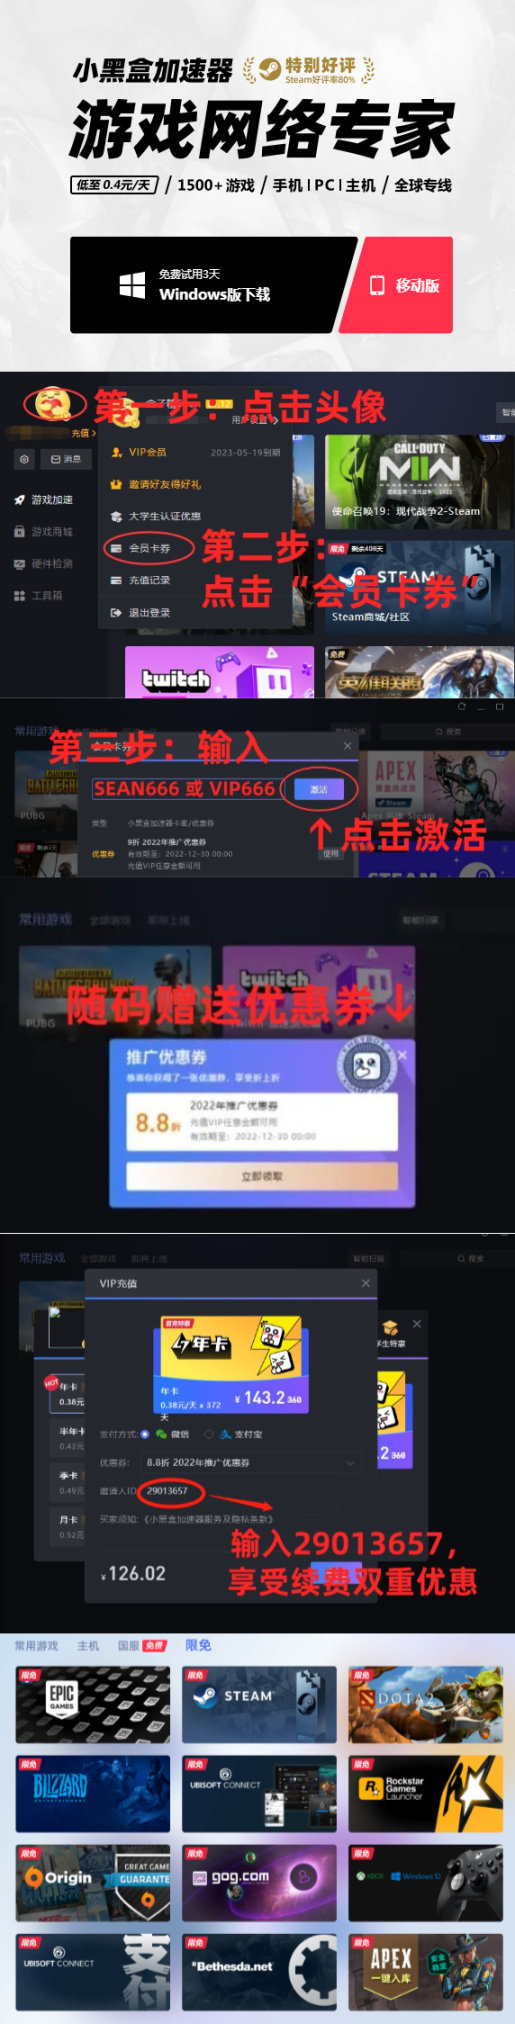 盒友快讯：《街霸6》春丽难设计；《阿凡达 2》中文配音阵容公布 31%title%